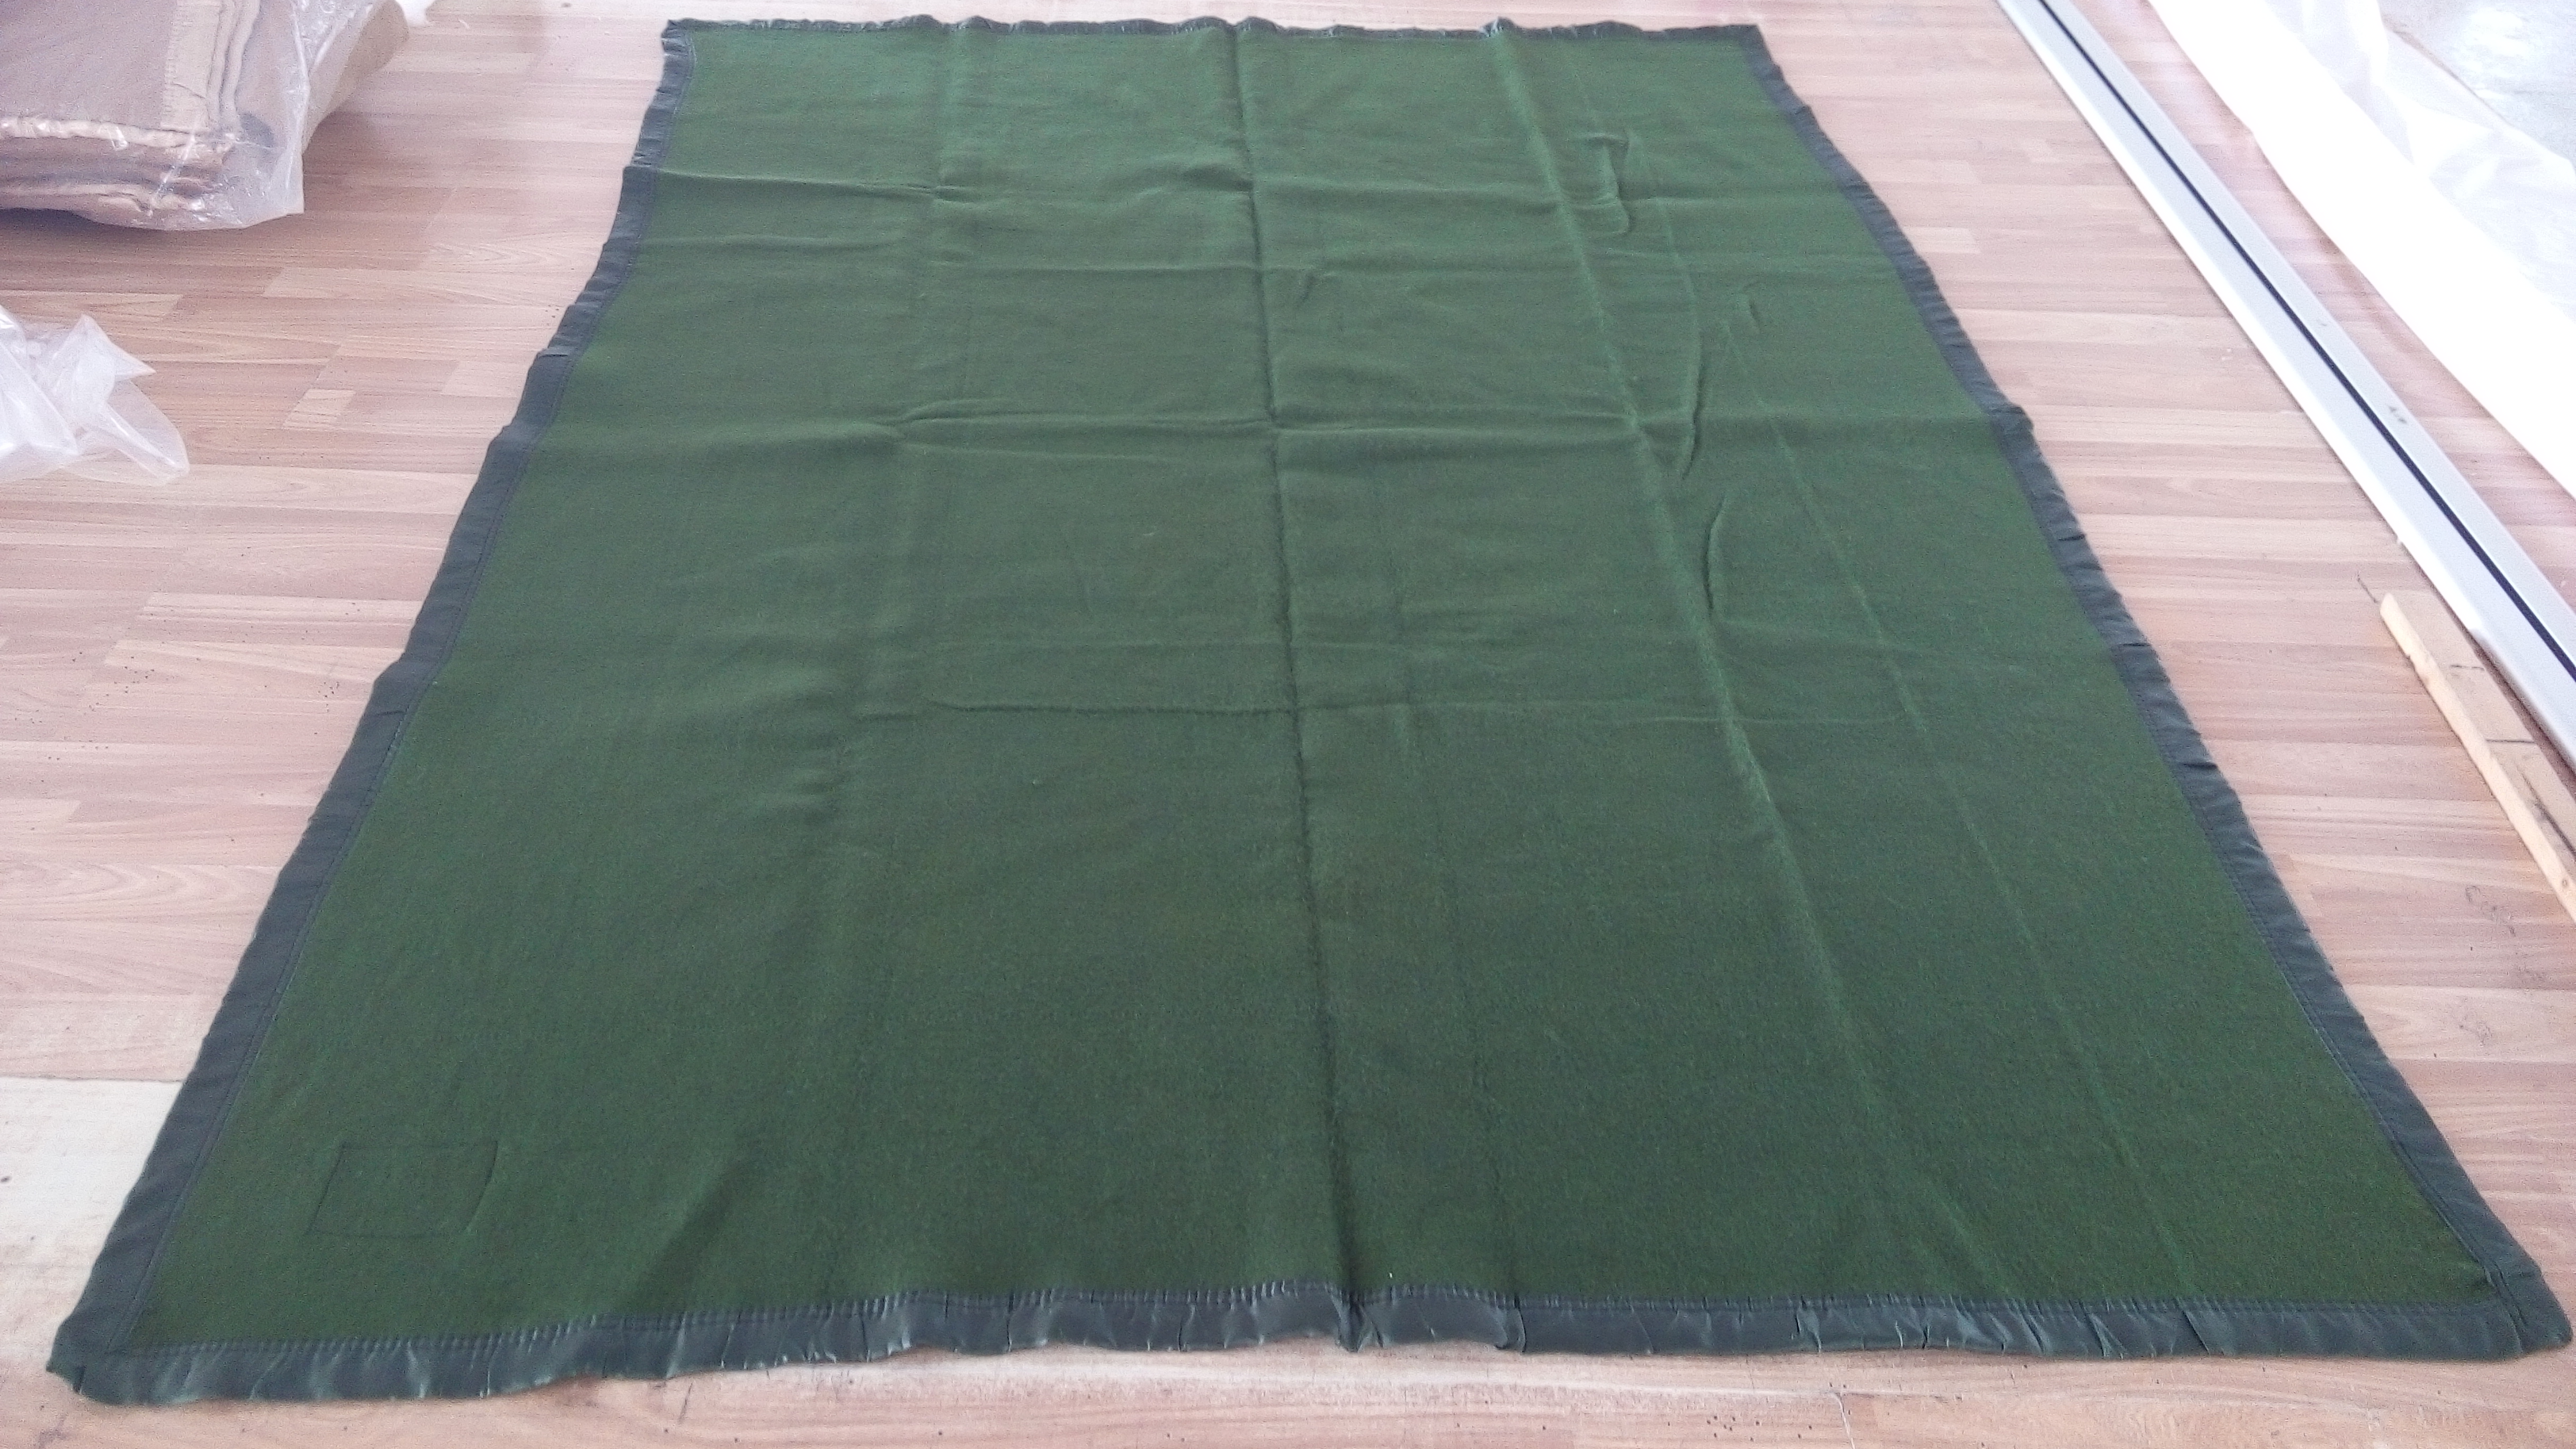 2000克草绿毛毯君需兴纺织品华北物资厂家直销绿色军毯